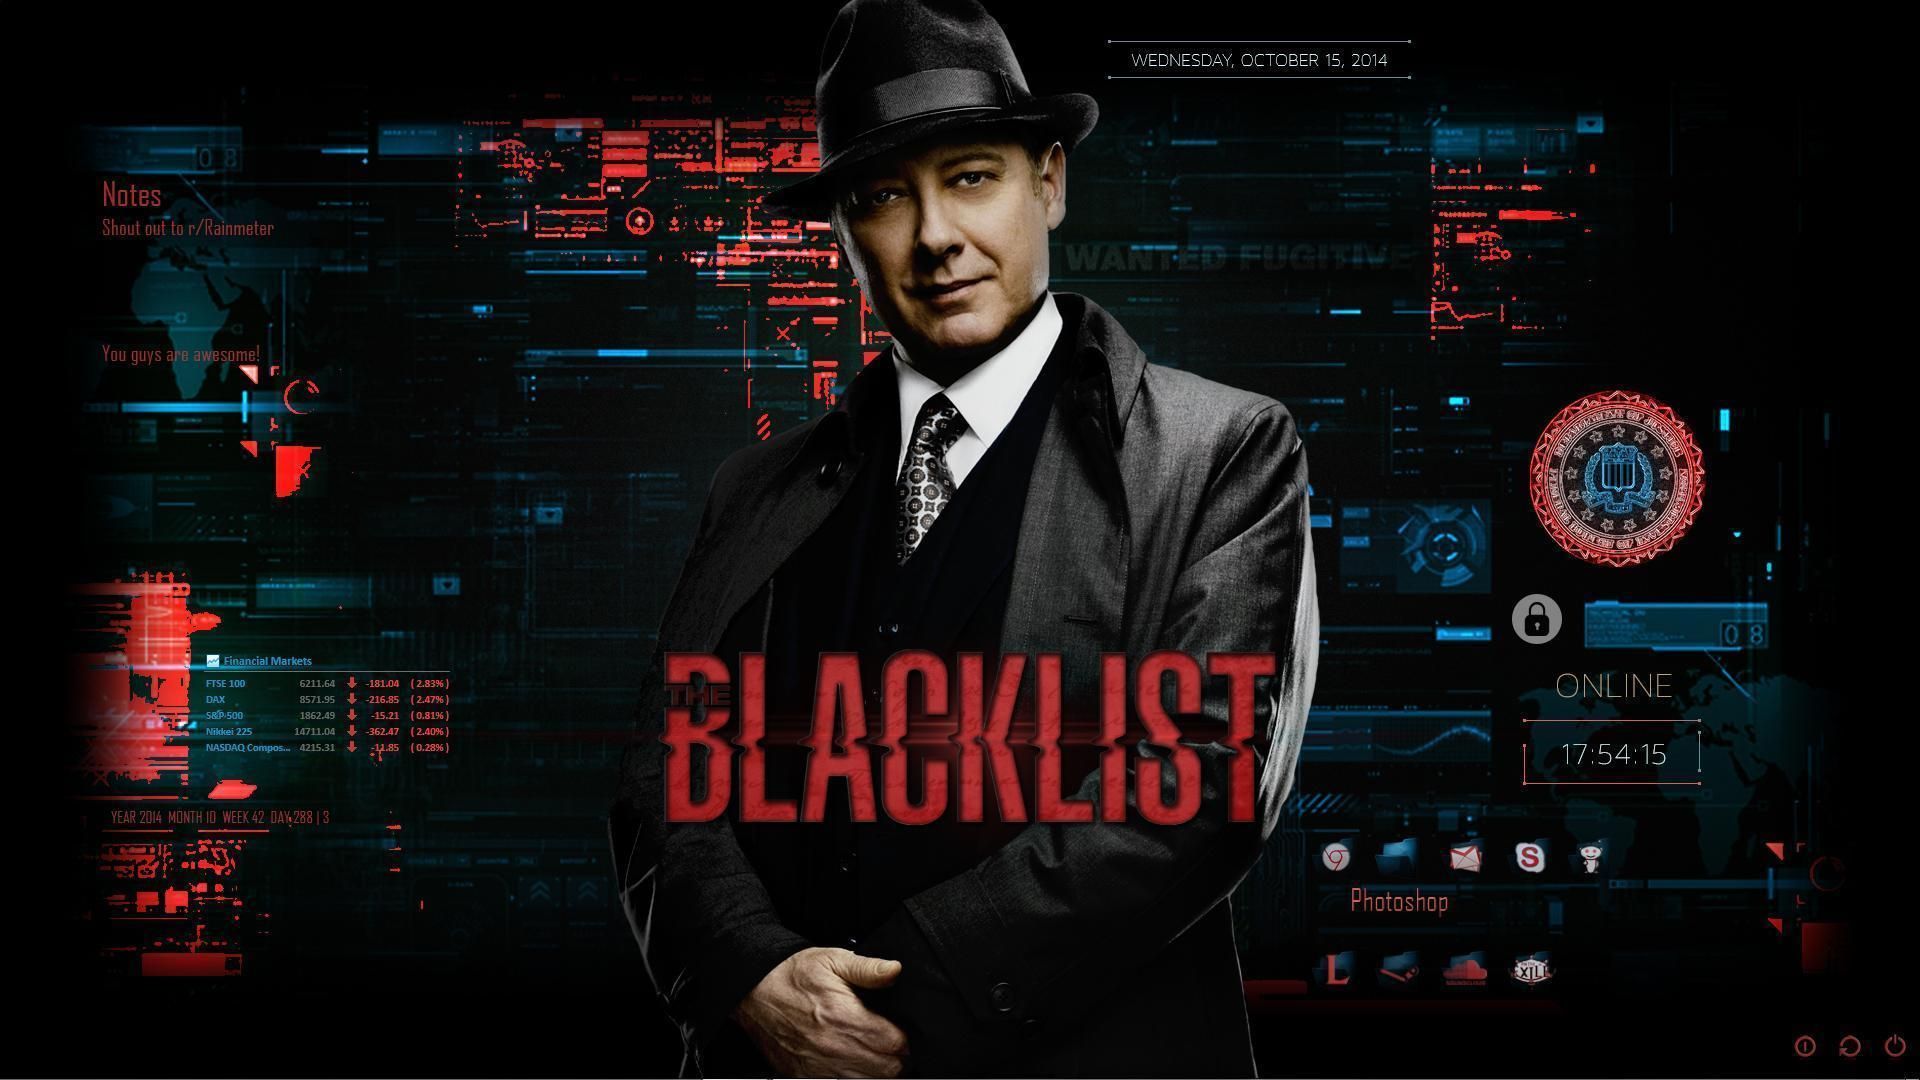 The Blacklist da NBC lidera a luta contra COVID